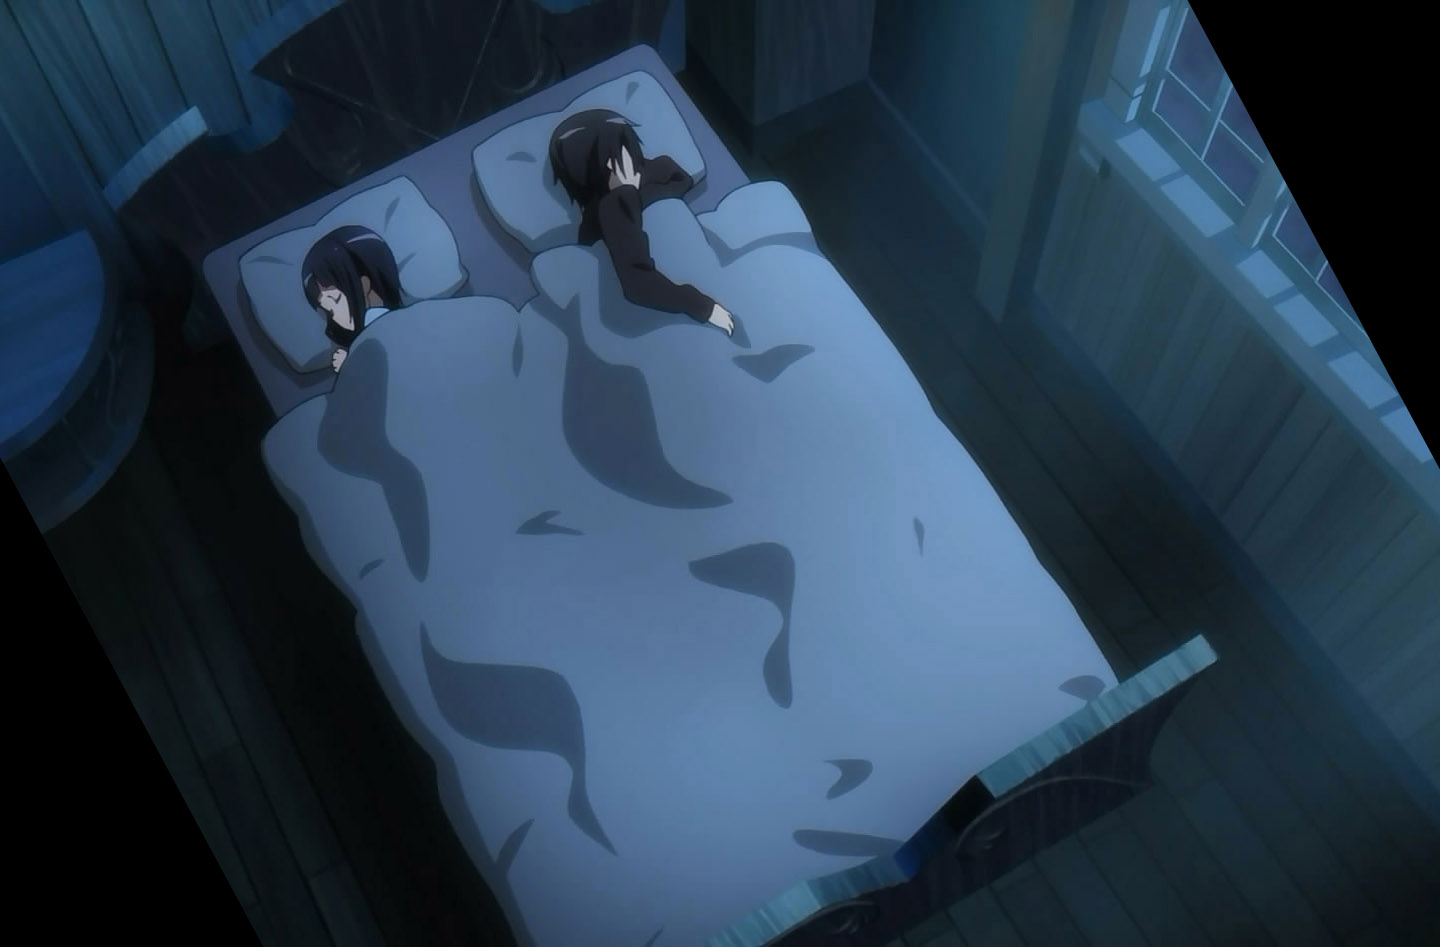 Sachi and Kirito sleeping together